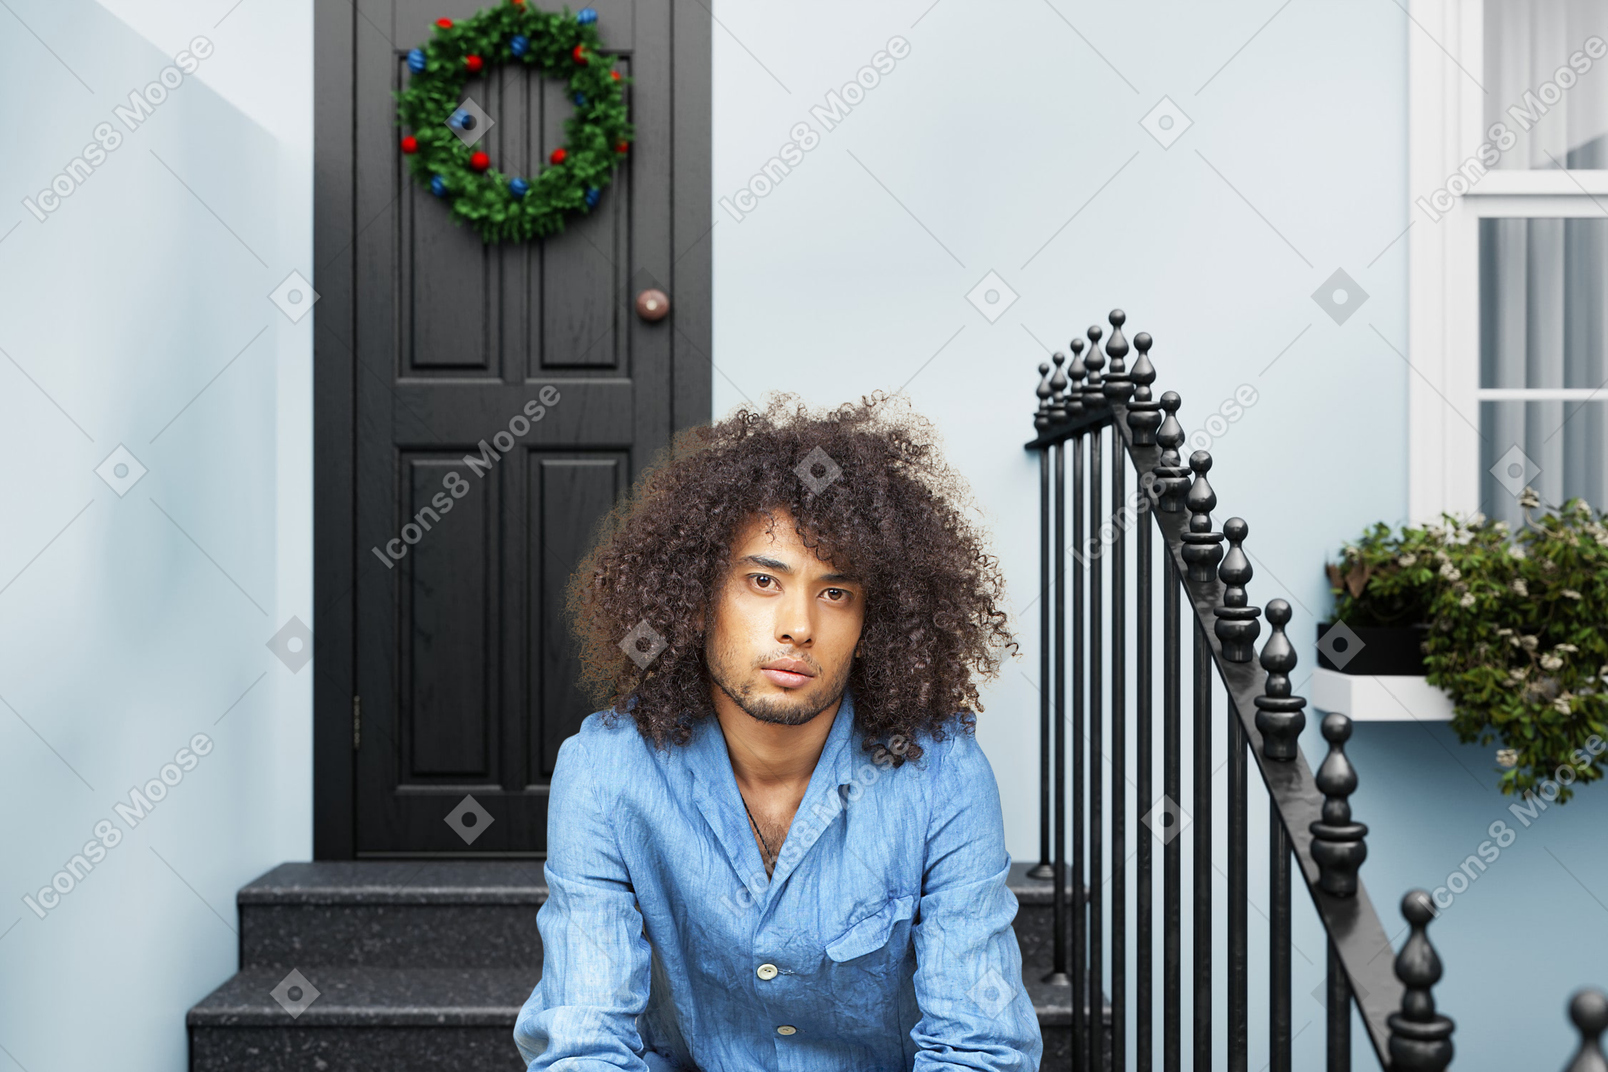 Hombre de pelo afro sentado en el porche decorado de navidad